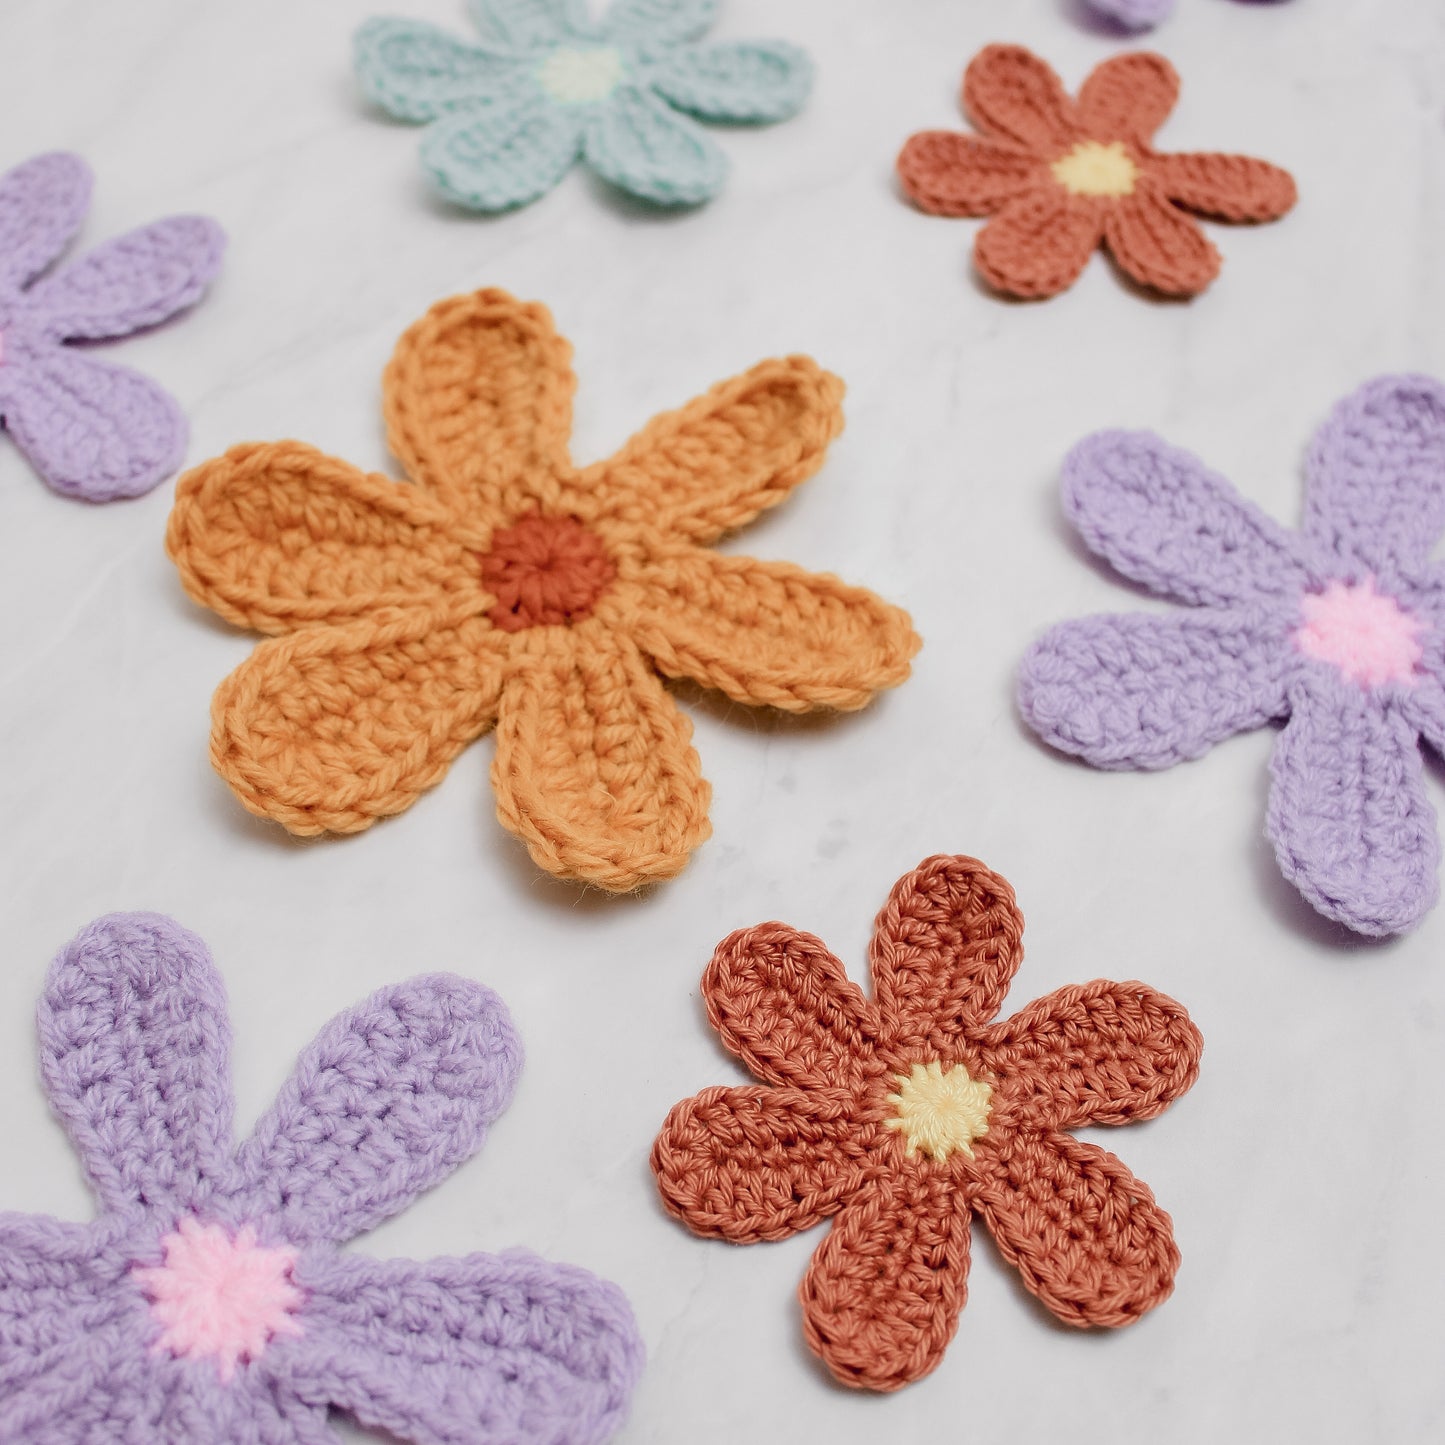 Crochet Retro Flower Written Pattern, Groovy Crochet Flower Pattern by Brunaticality